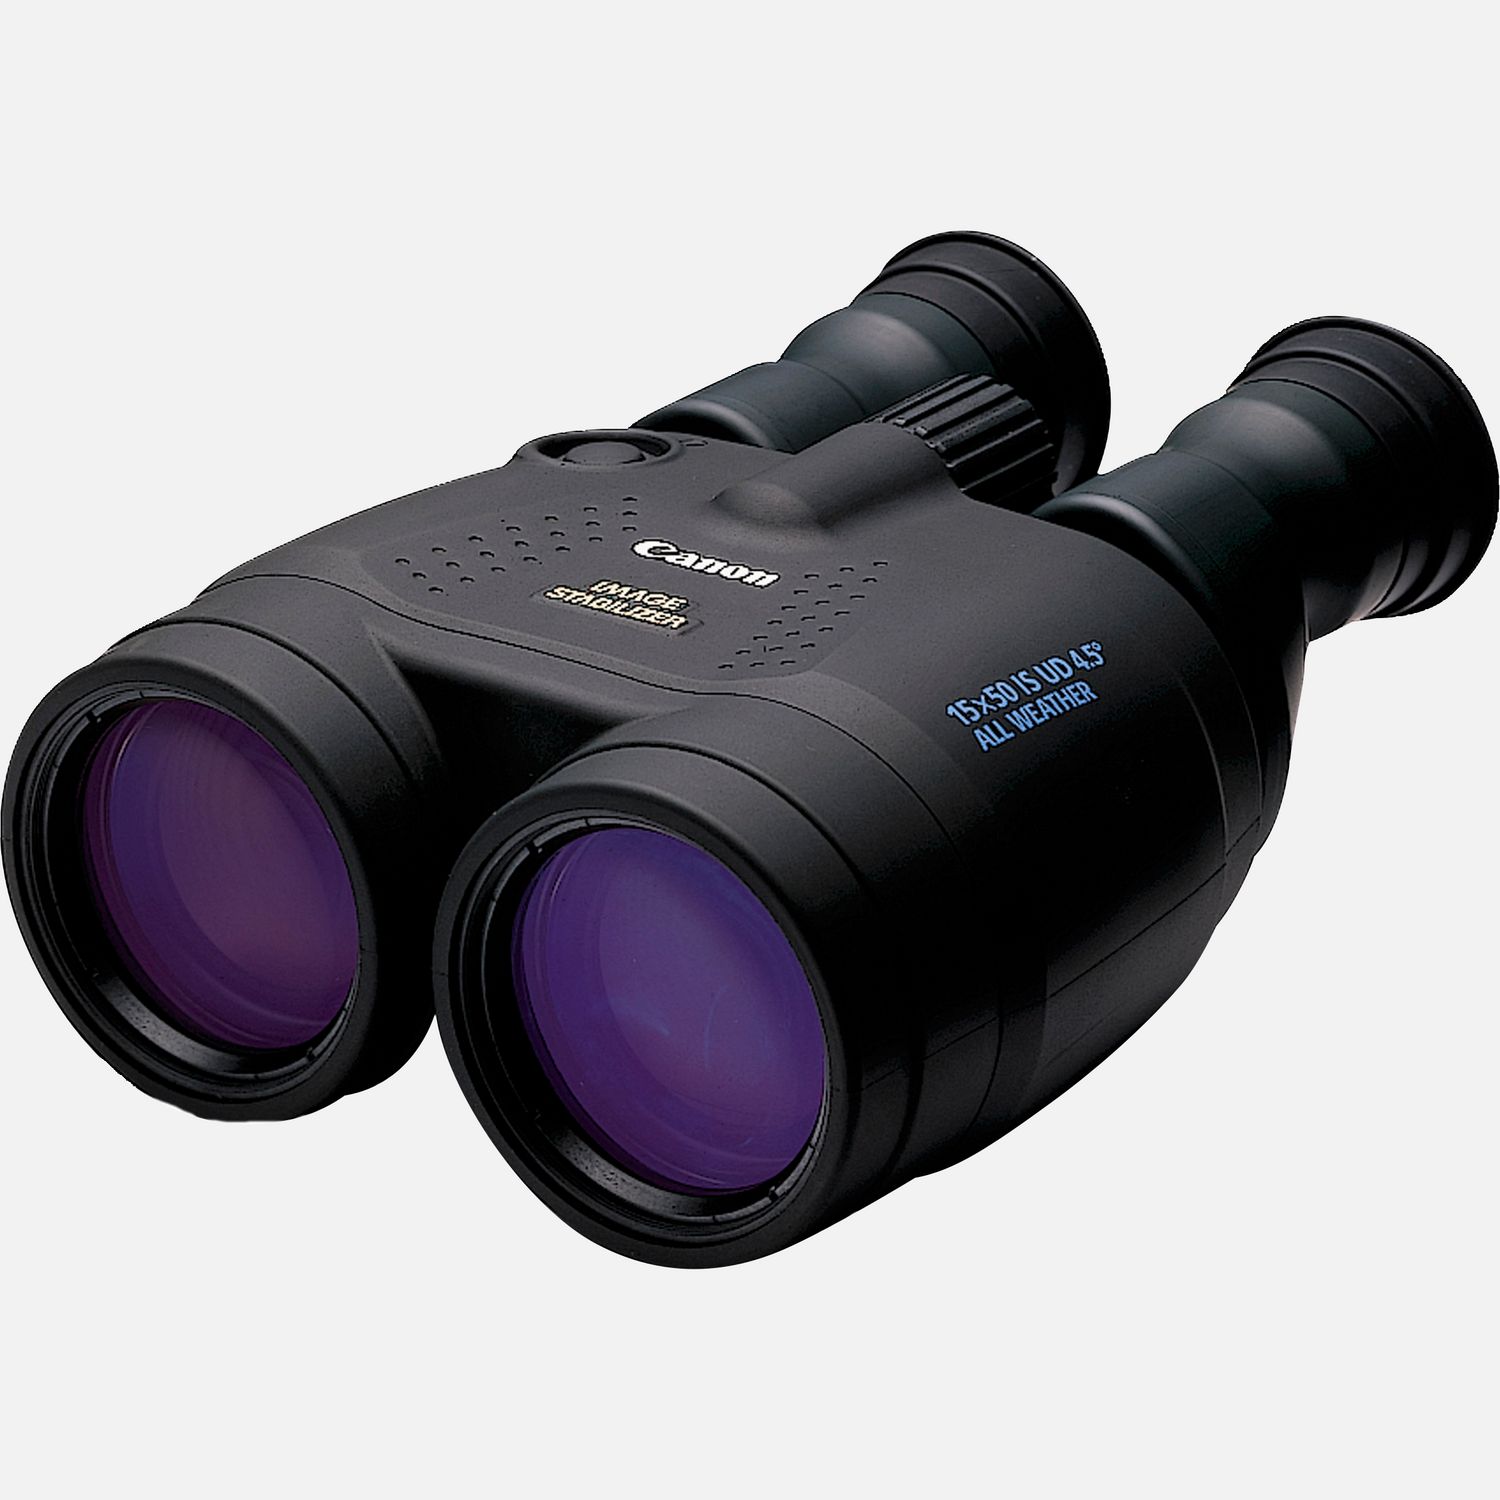 Image of Potenti binocoli Canon 15x50 IS ad elevata capacità di ingrandimento, zoom resistente a qualsiasi condizione atmosferica